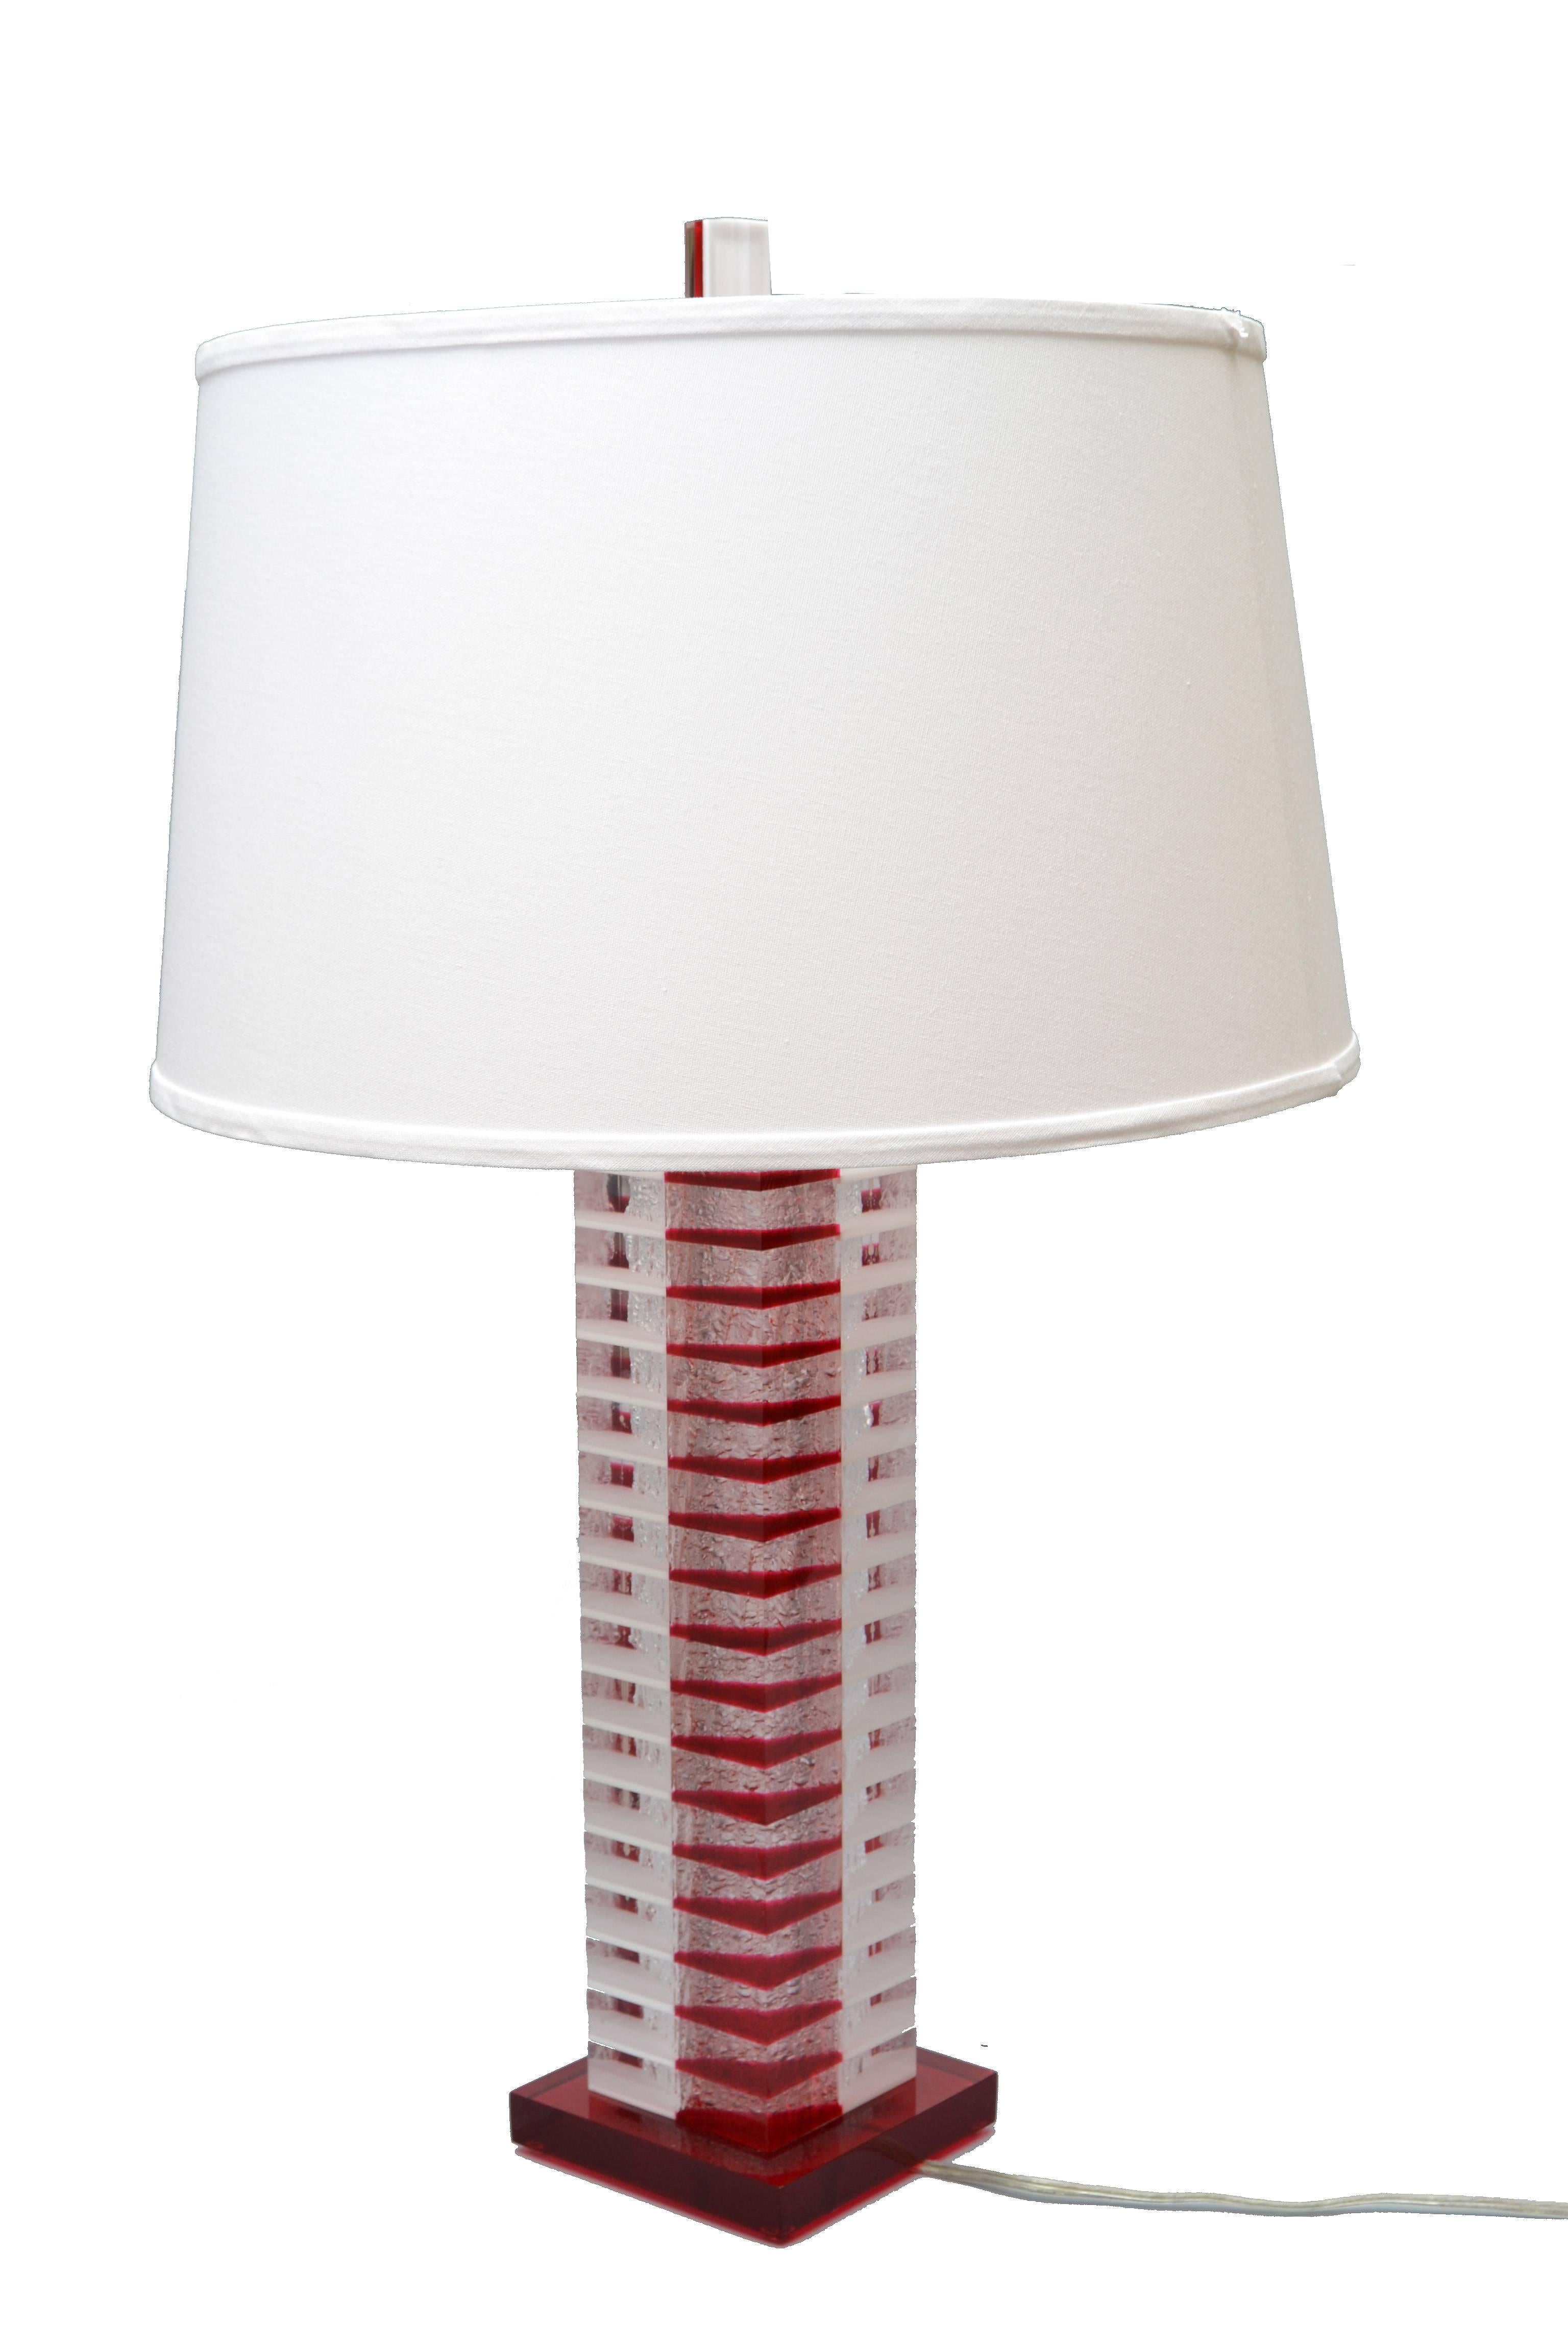 Moderne Tischleuchte aus rotem, weißem und transparentem Lucite mit Nickel-Beschlägen. 
Für die USA verdrahtet und mit normaler oder LED-Glühbirne.
Der Lampenschirm ist nicht im Lieferumfang enthalten.
Maße: Höhe bis zur Oberkante des Sockels: 22.5